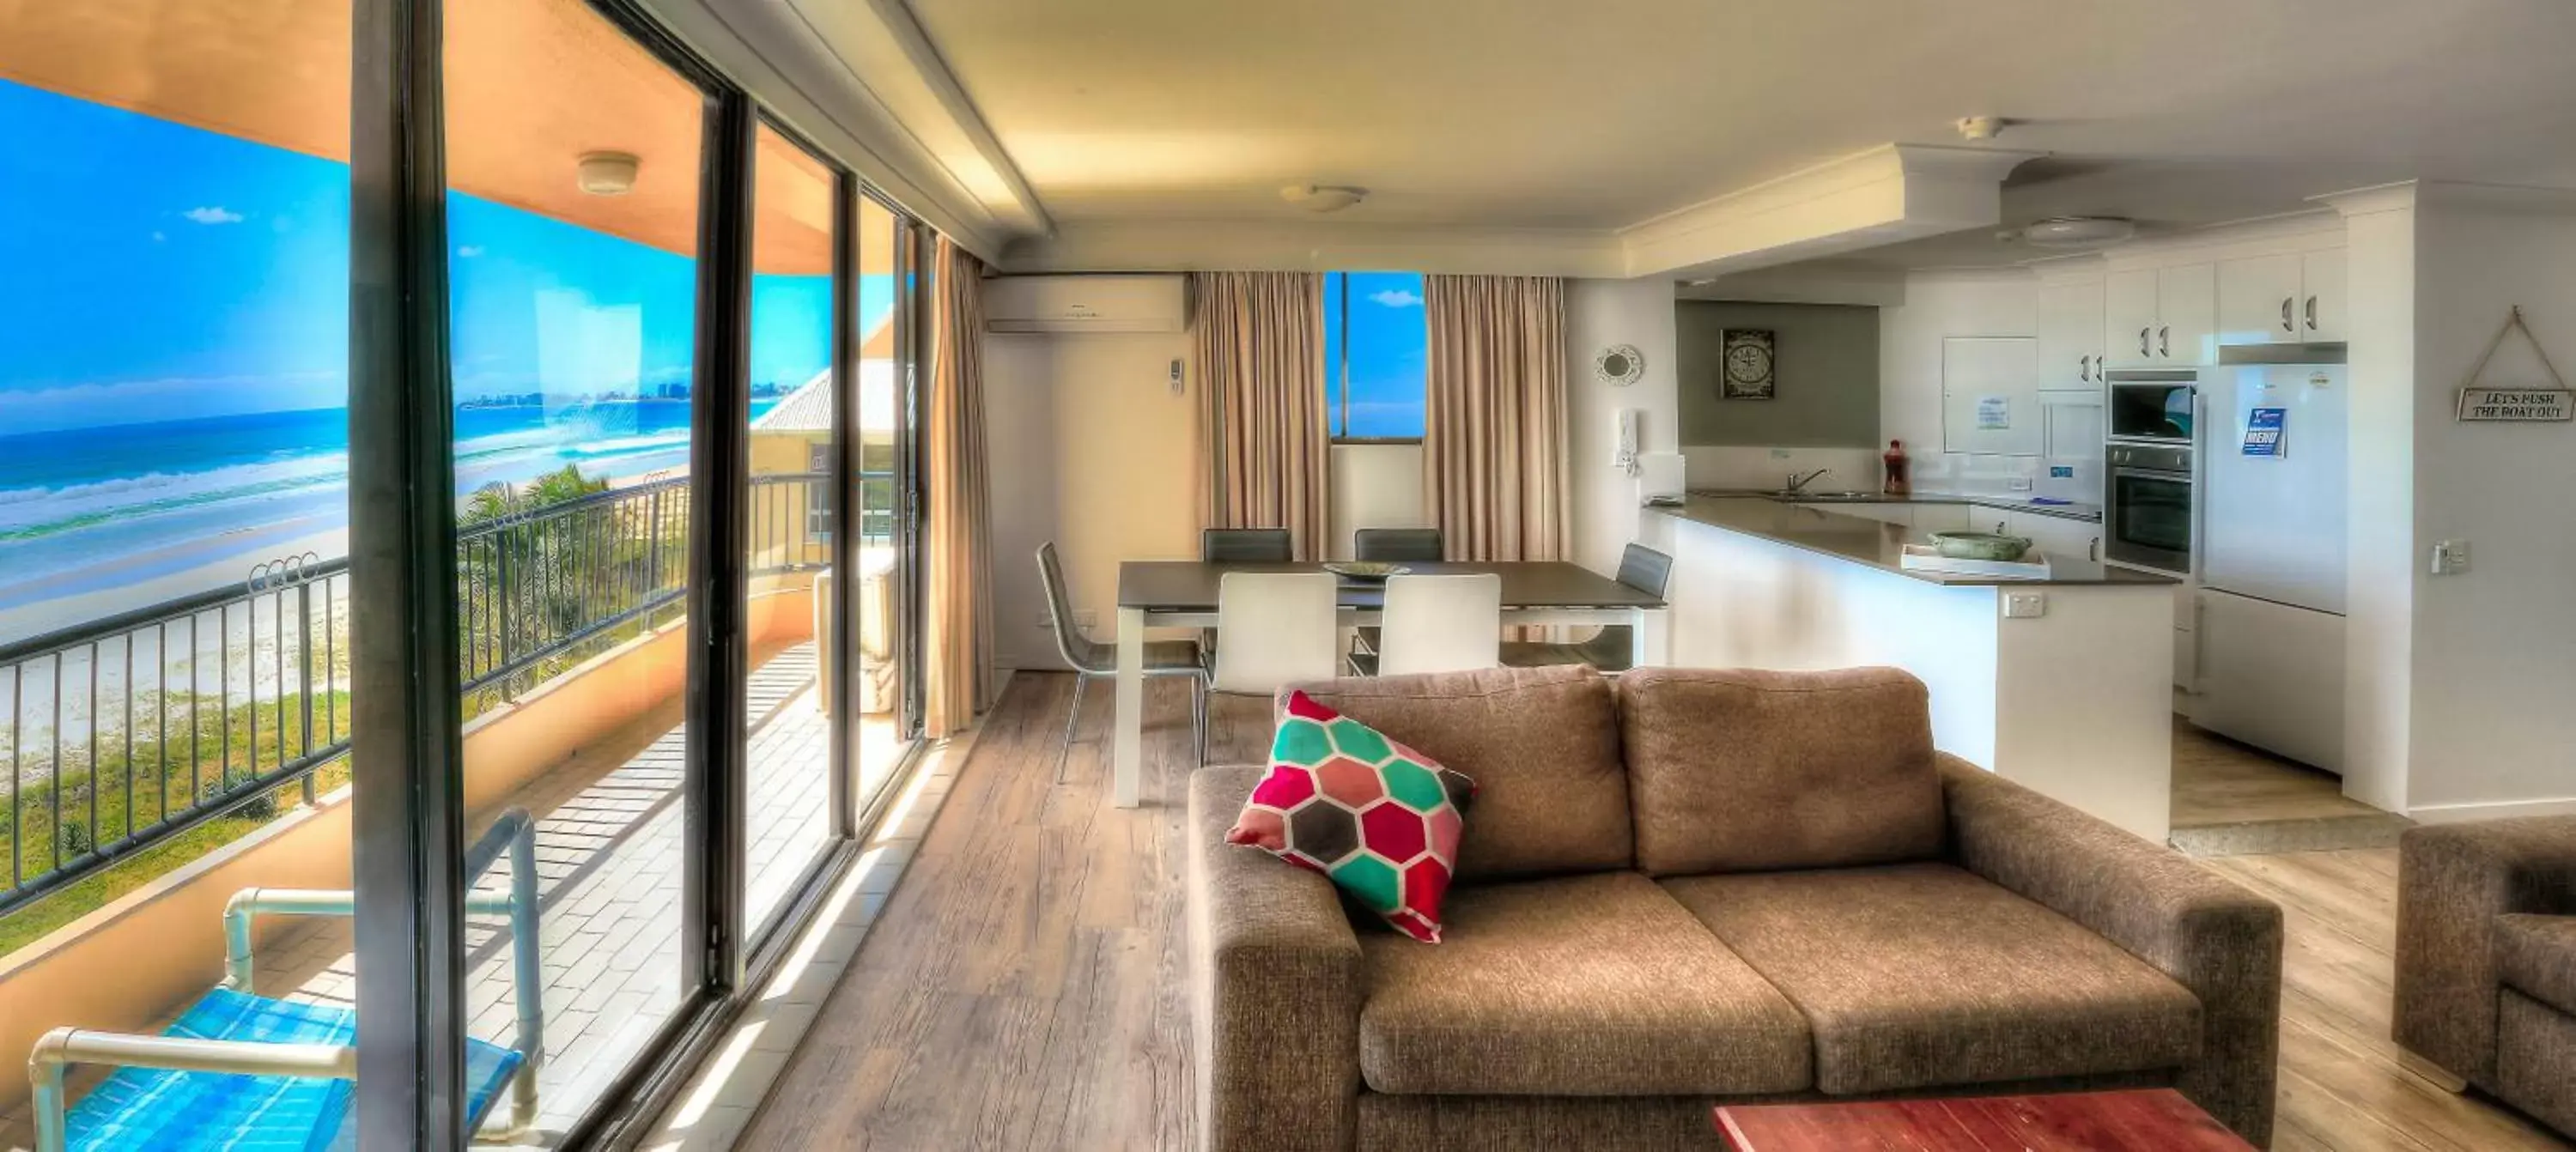 Balcony/Terrace, Seating Area in Pelican Sands Beach Resort